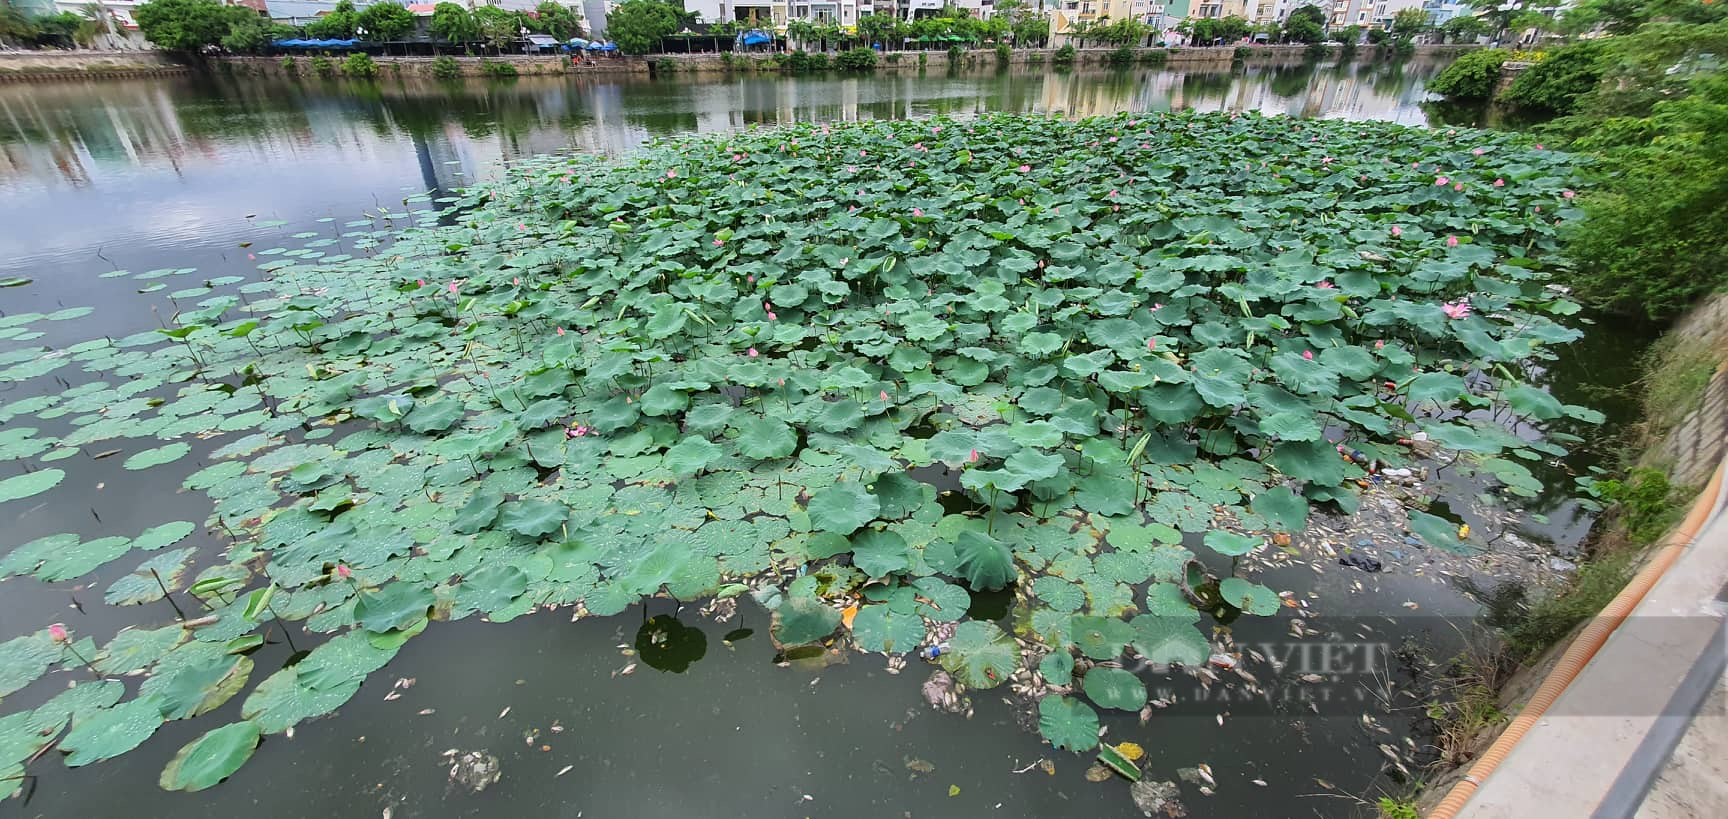 Bất ngờ lý do khiến cá chết hàng loạt ở hồ sinh thái nổi tiếng Quy Nhơn - Ảnh 2.